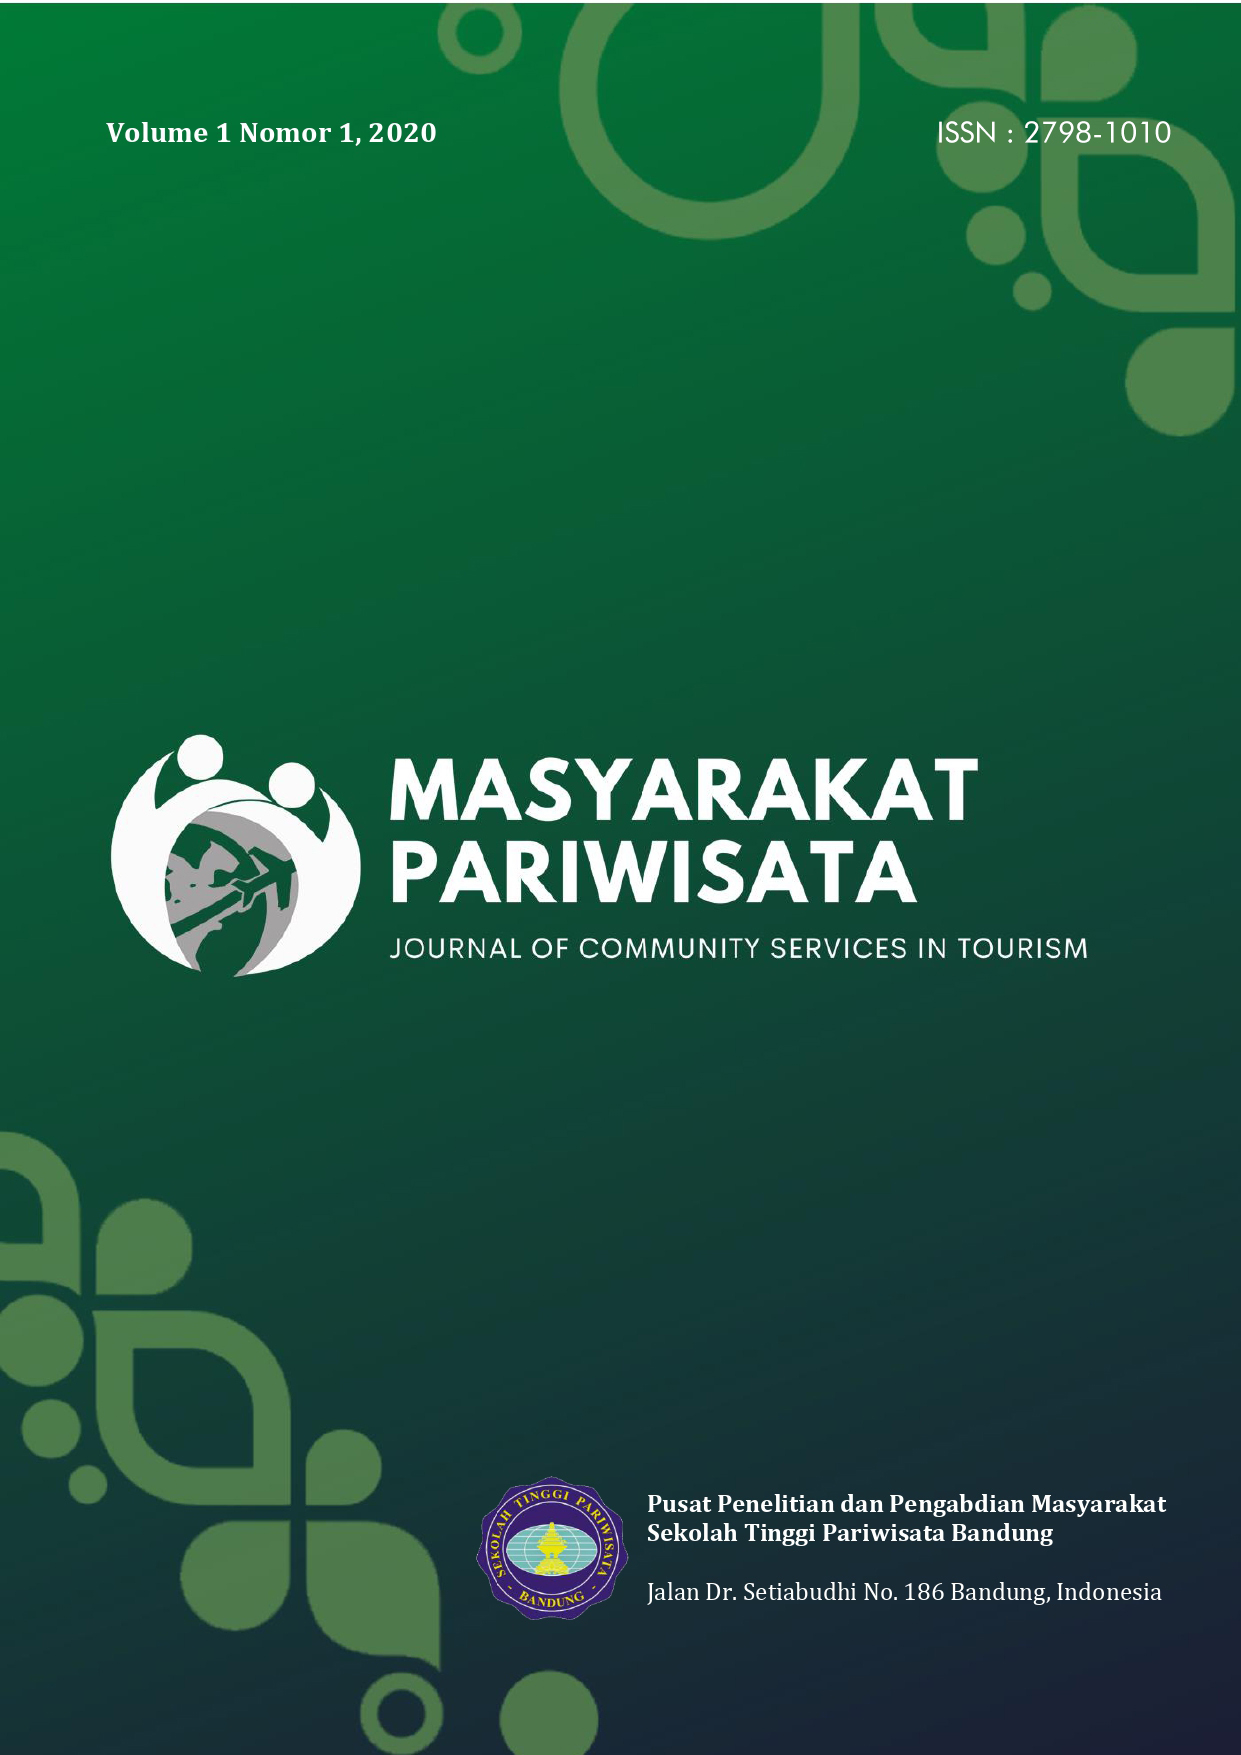 Masyarakat Pariwisata: Journal of Community Services in Tourism